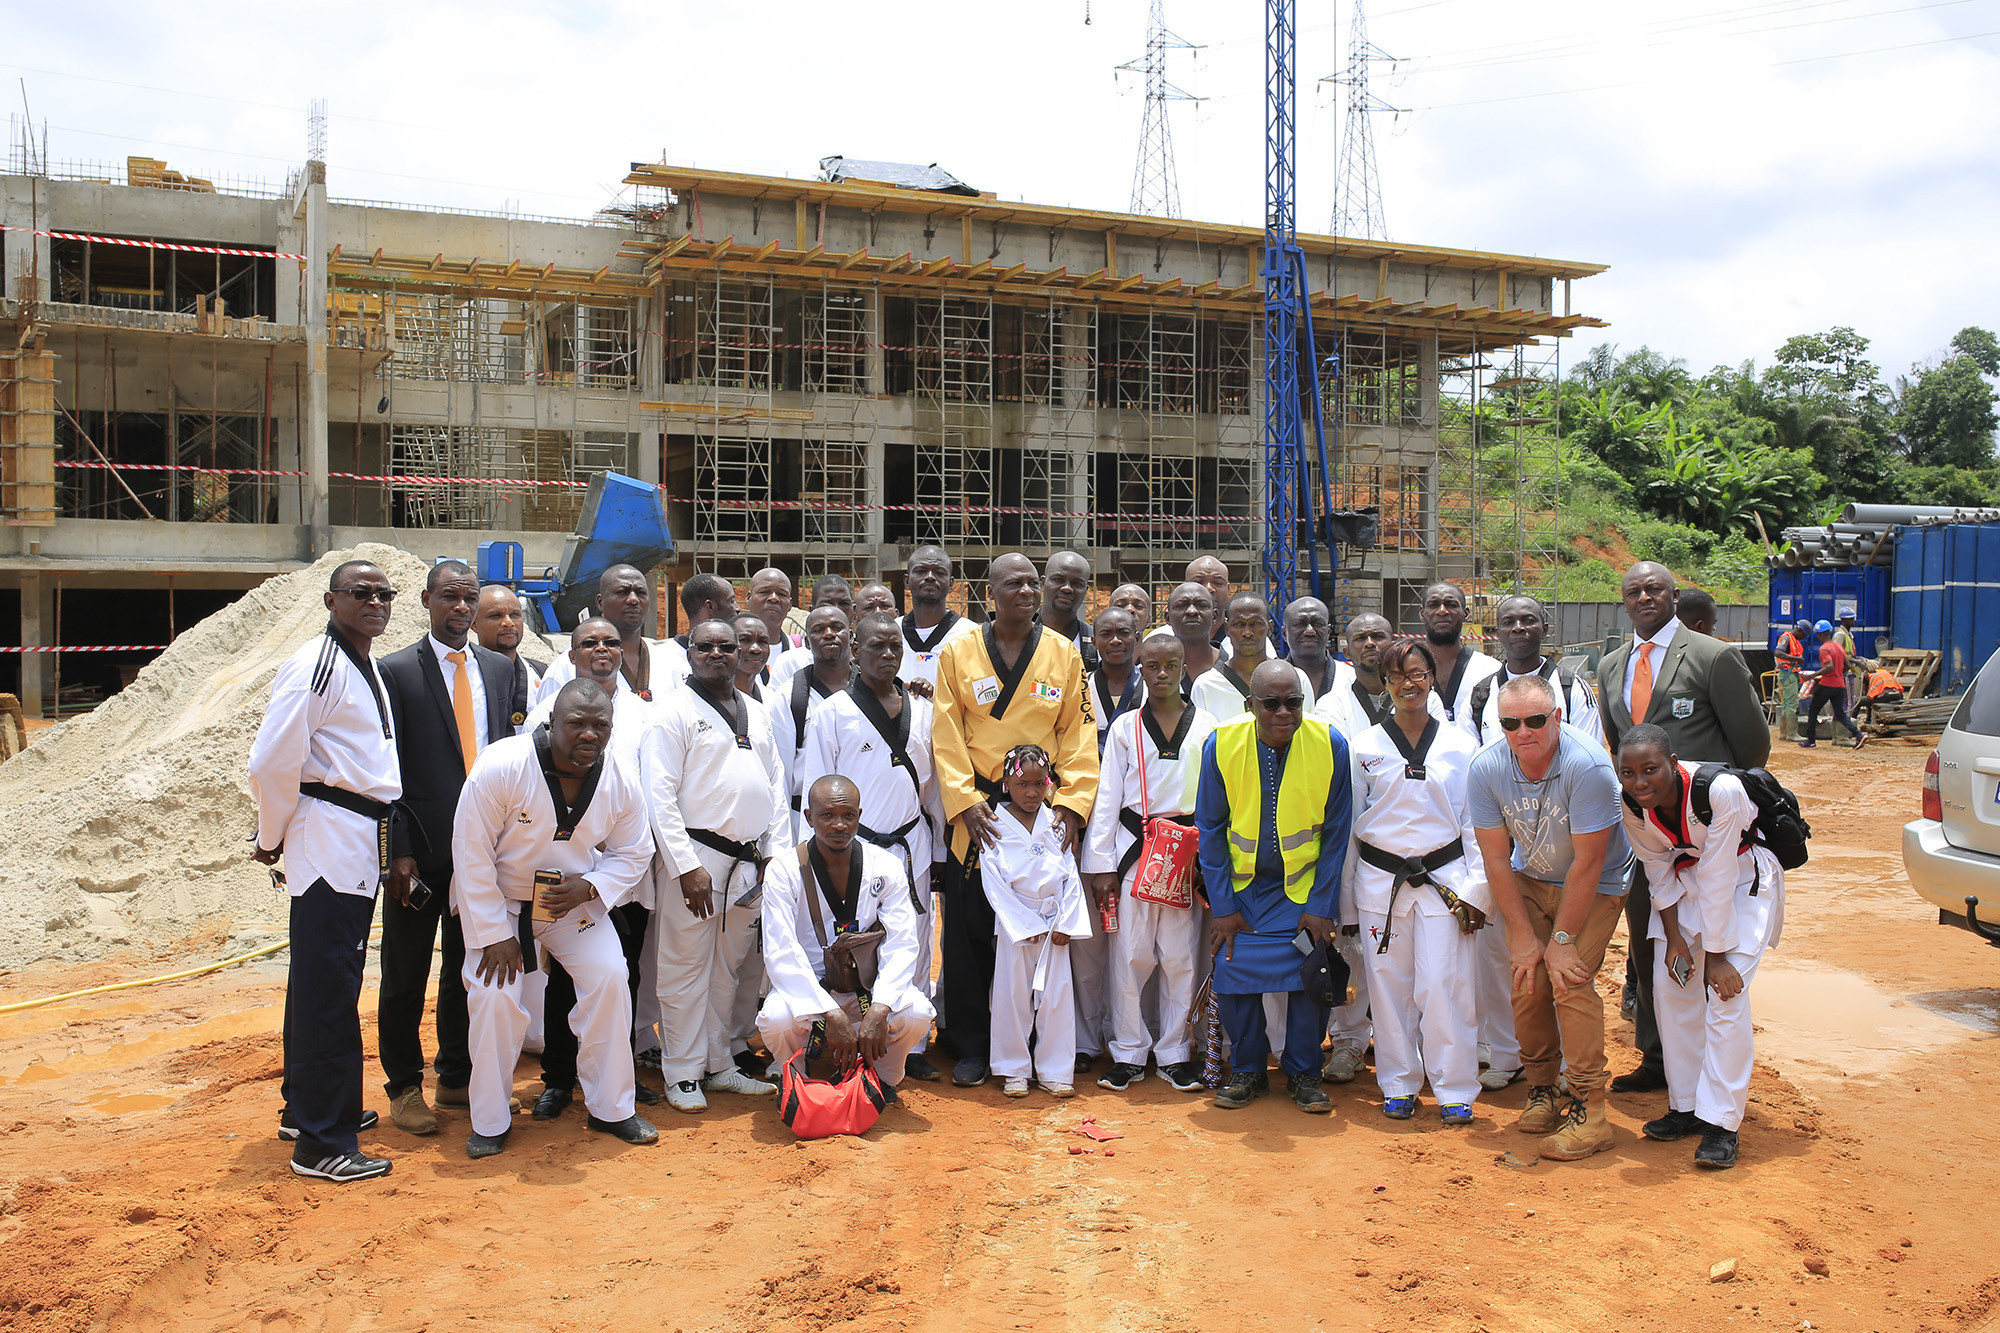 Officials in Ivory Coast inspect progress at new taekwondo facility